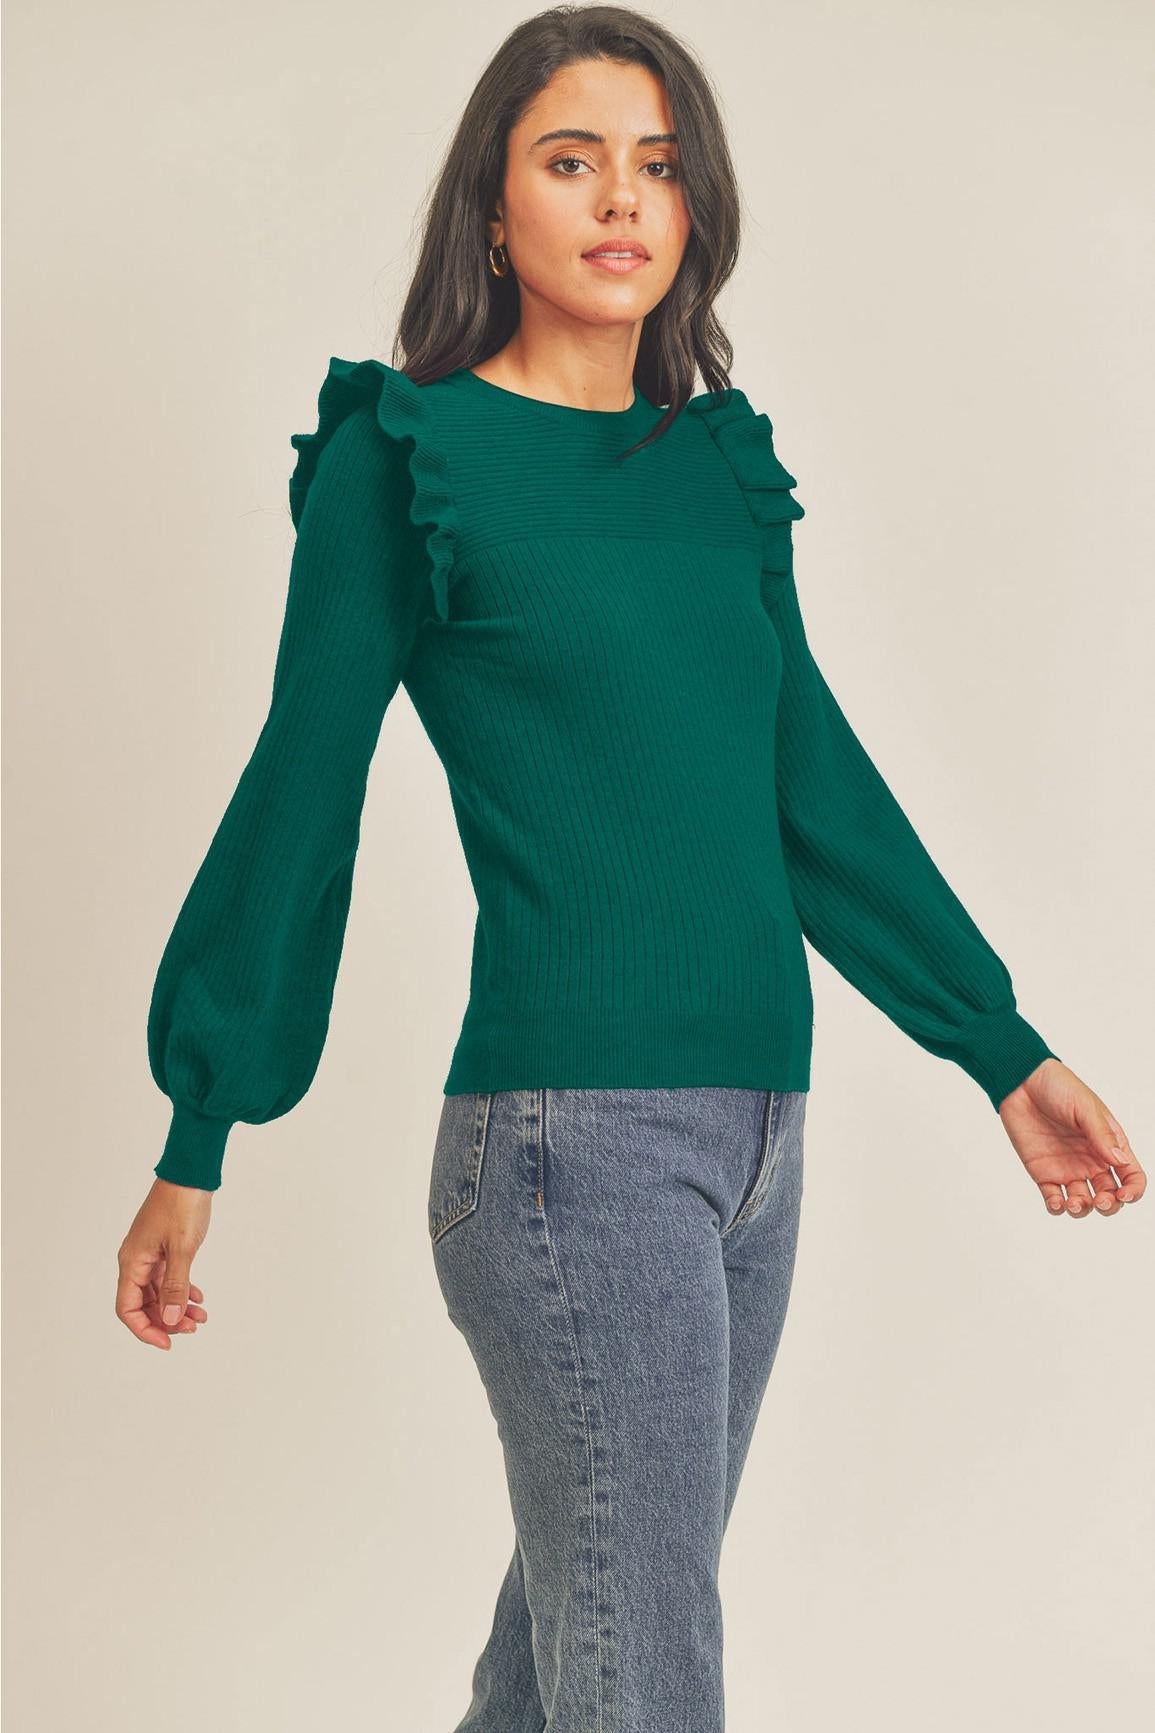 Alpine Green Ruffle Sweater